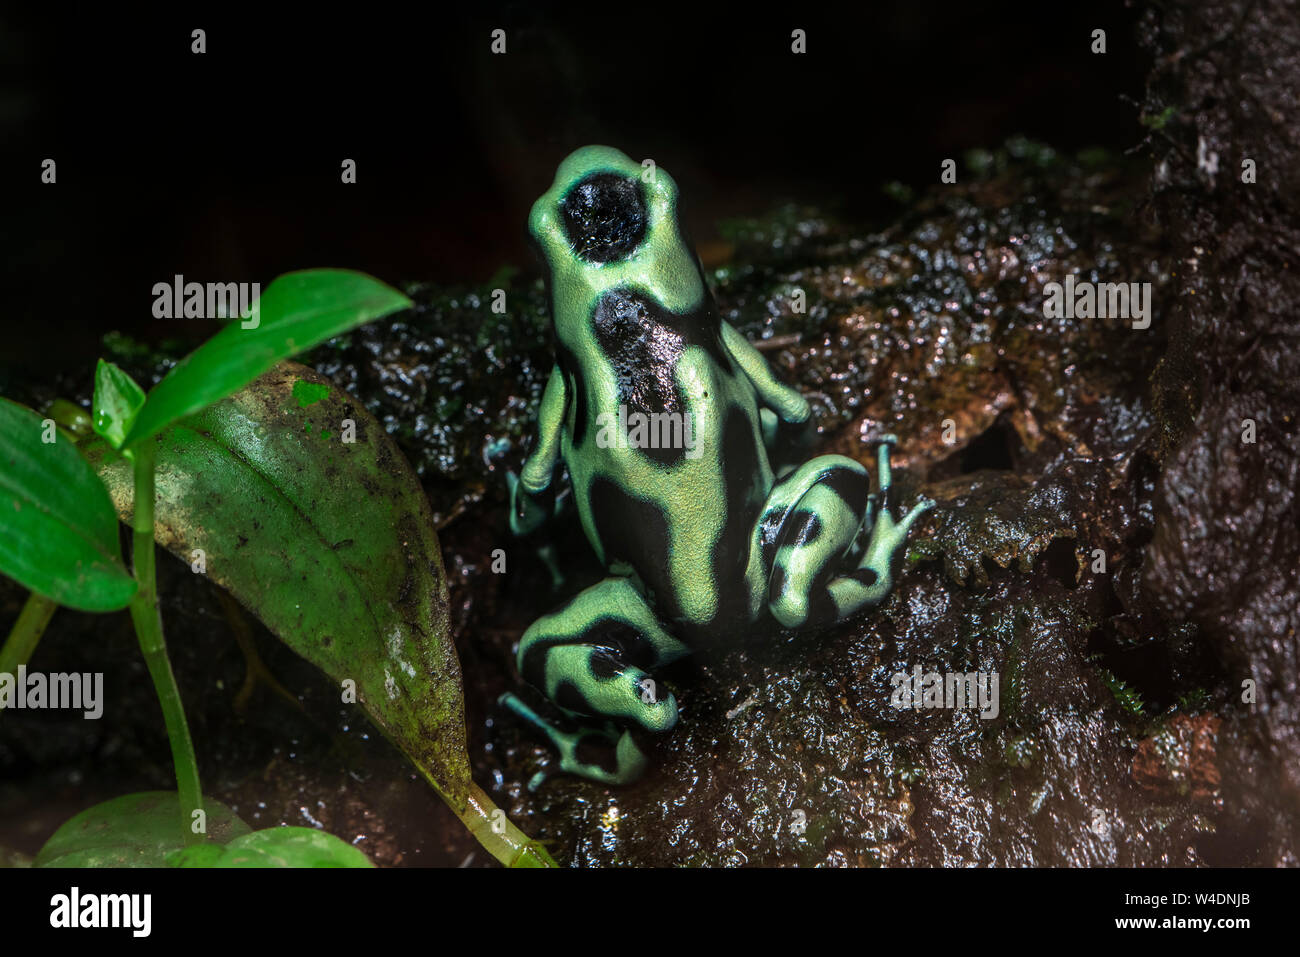 Vert-et-black poison dart frog / vert et noir poison arrow frog (Dendrobates auratus auratus Phyllobates /) originaire d'Amérique centrale et du Sud Banque D'Images